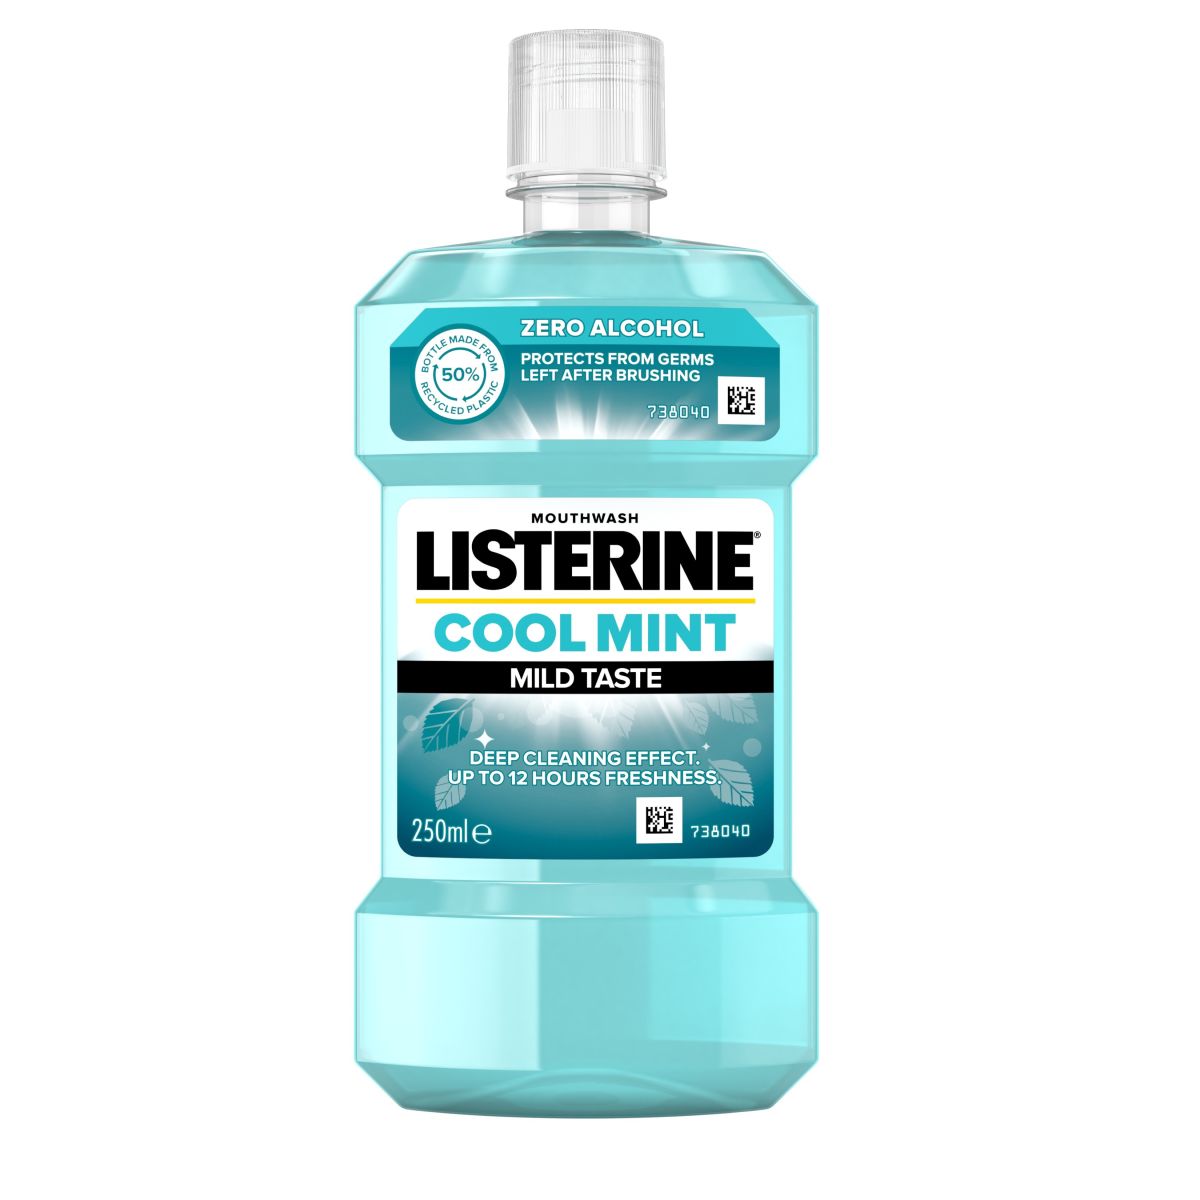 Listerine mouthwash Coolmint mild taste